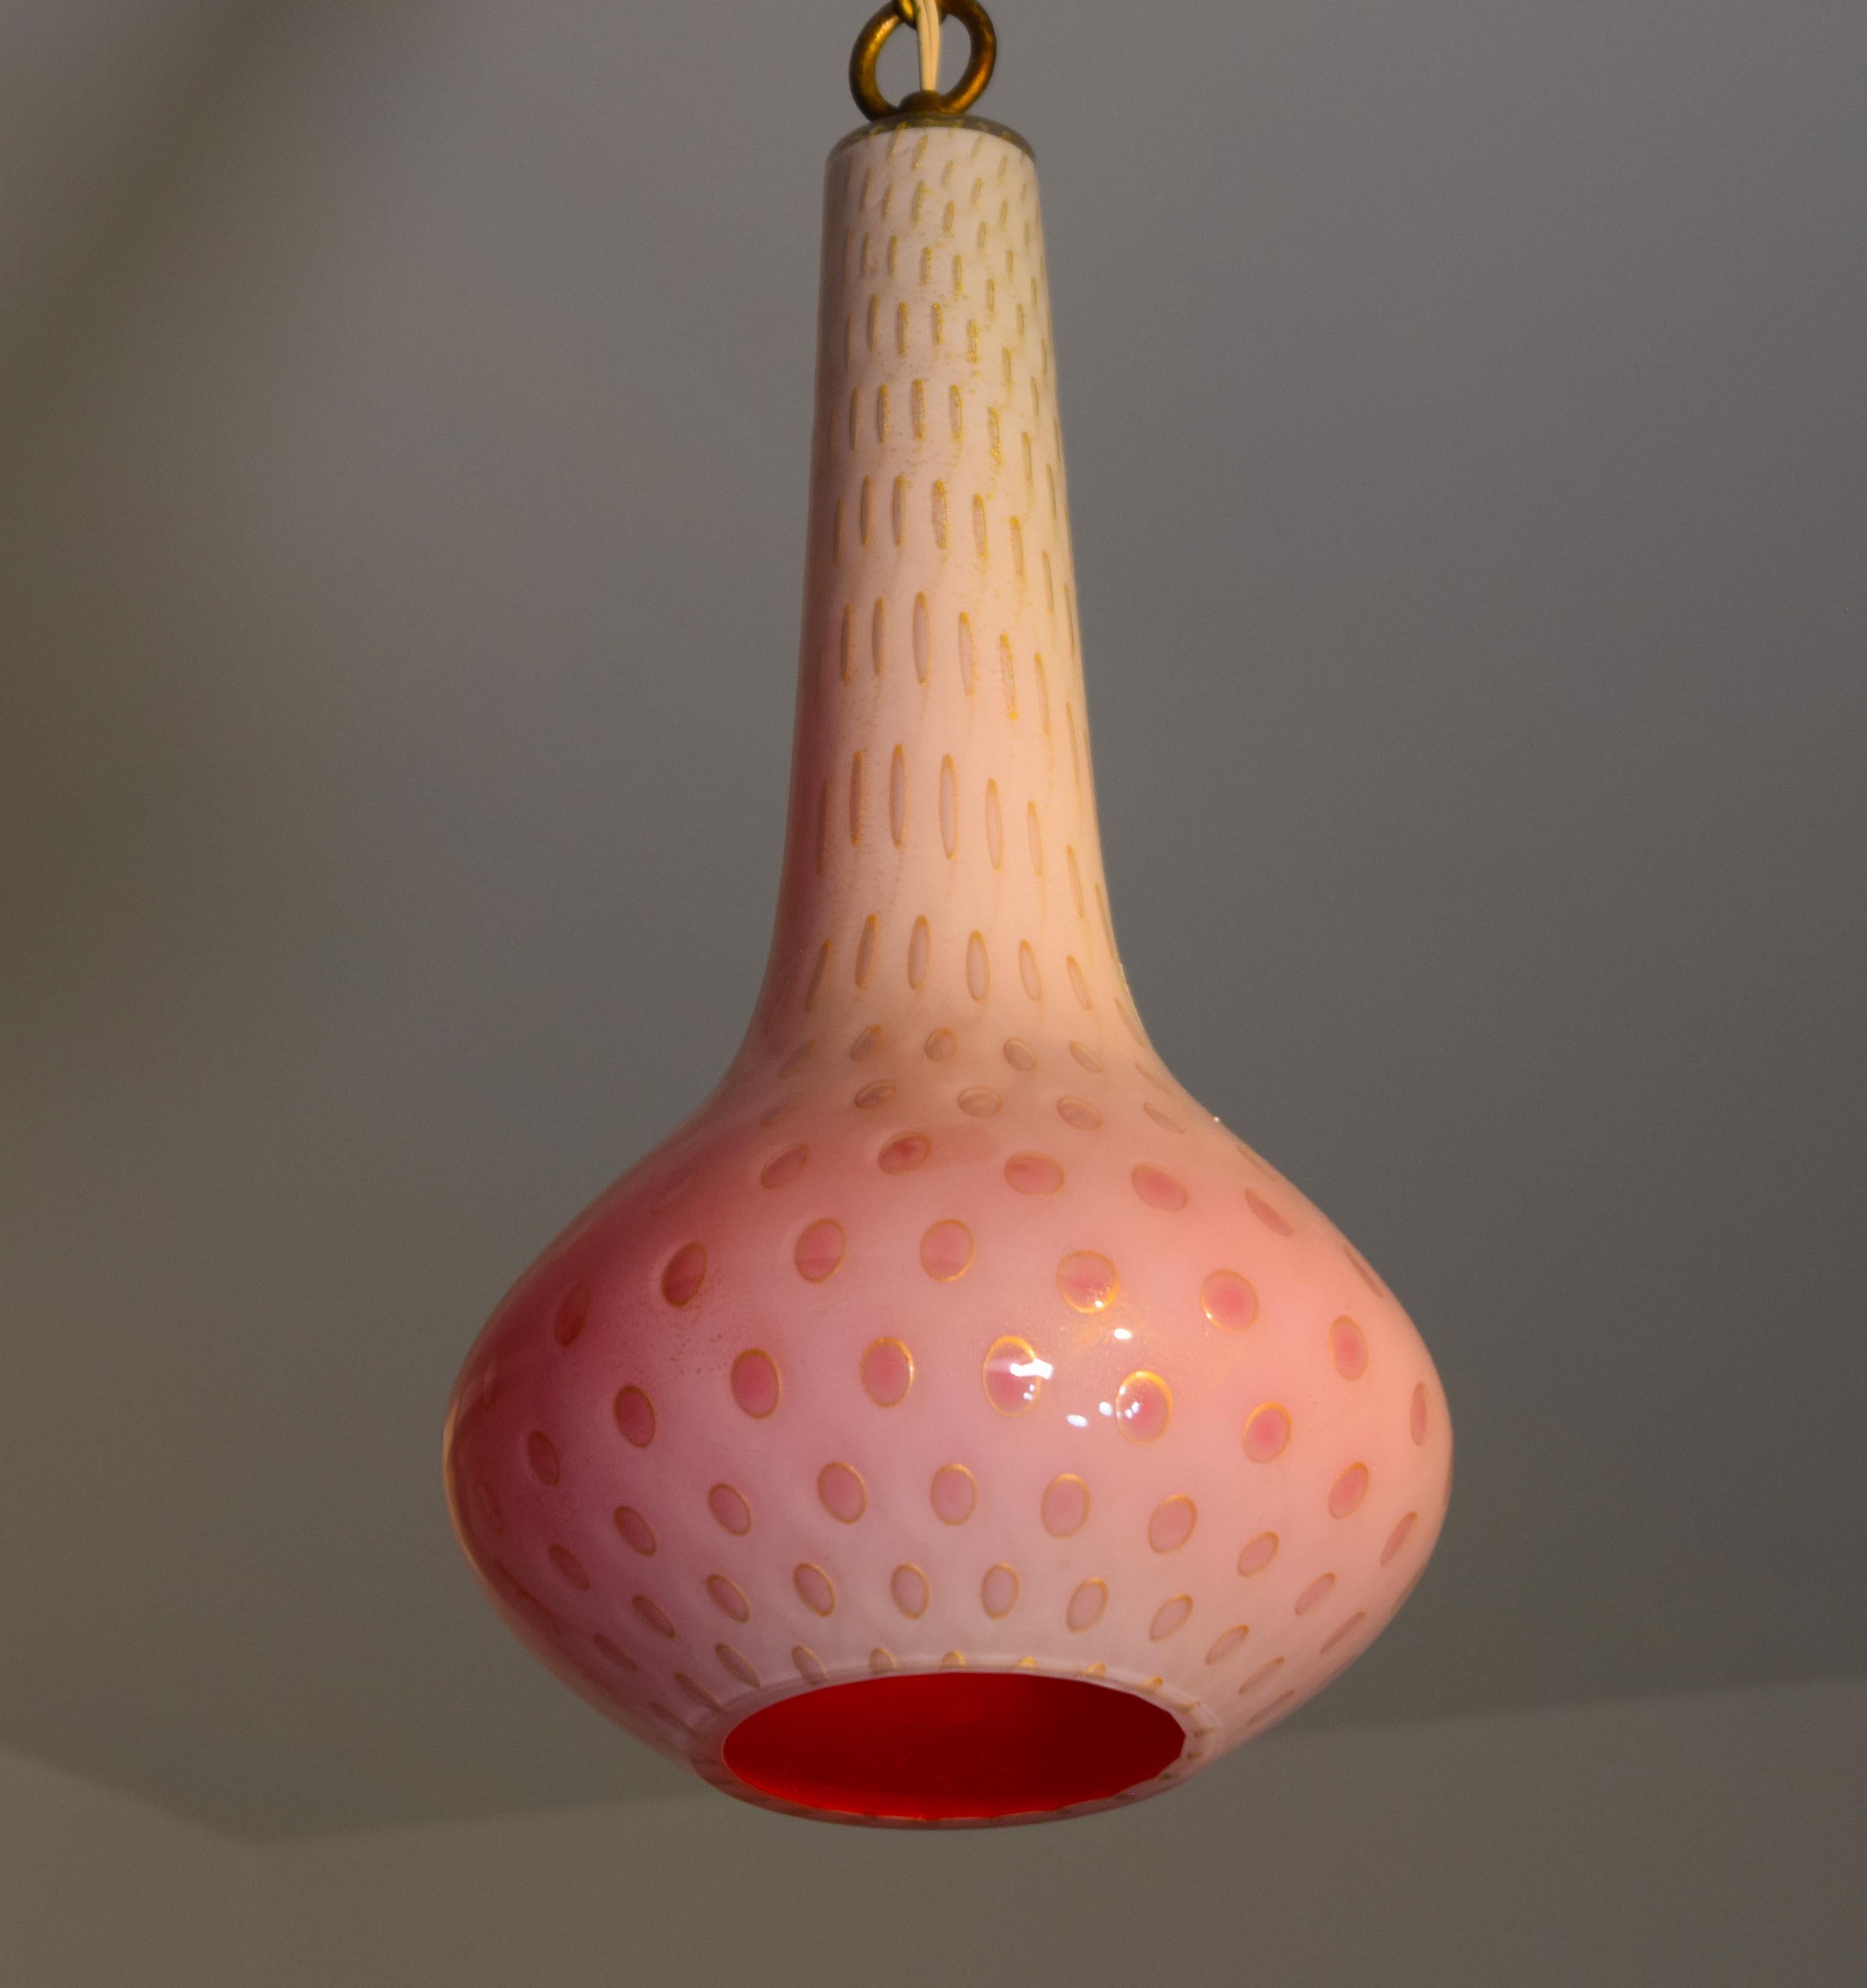 Eine seltene Hängeleuchte von Aldrefo Barbini, Italien um 1950. Ummanteltes Genie-Glas mit rosafarbener Innenseite und kontrollierten Blasen im äußeren Glas mit goldenen Kreisen und Flecken, die in das Weiß eingebettet sind. Misst 23